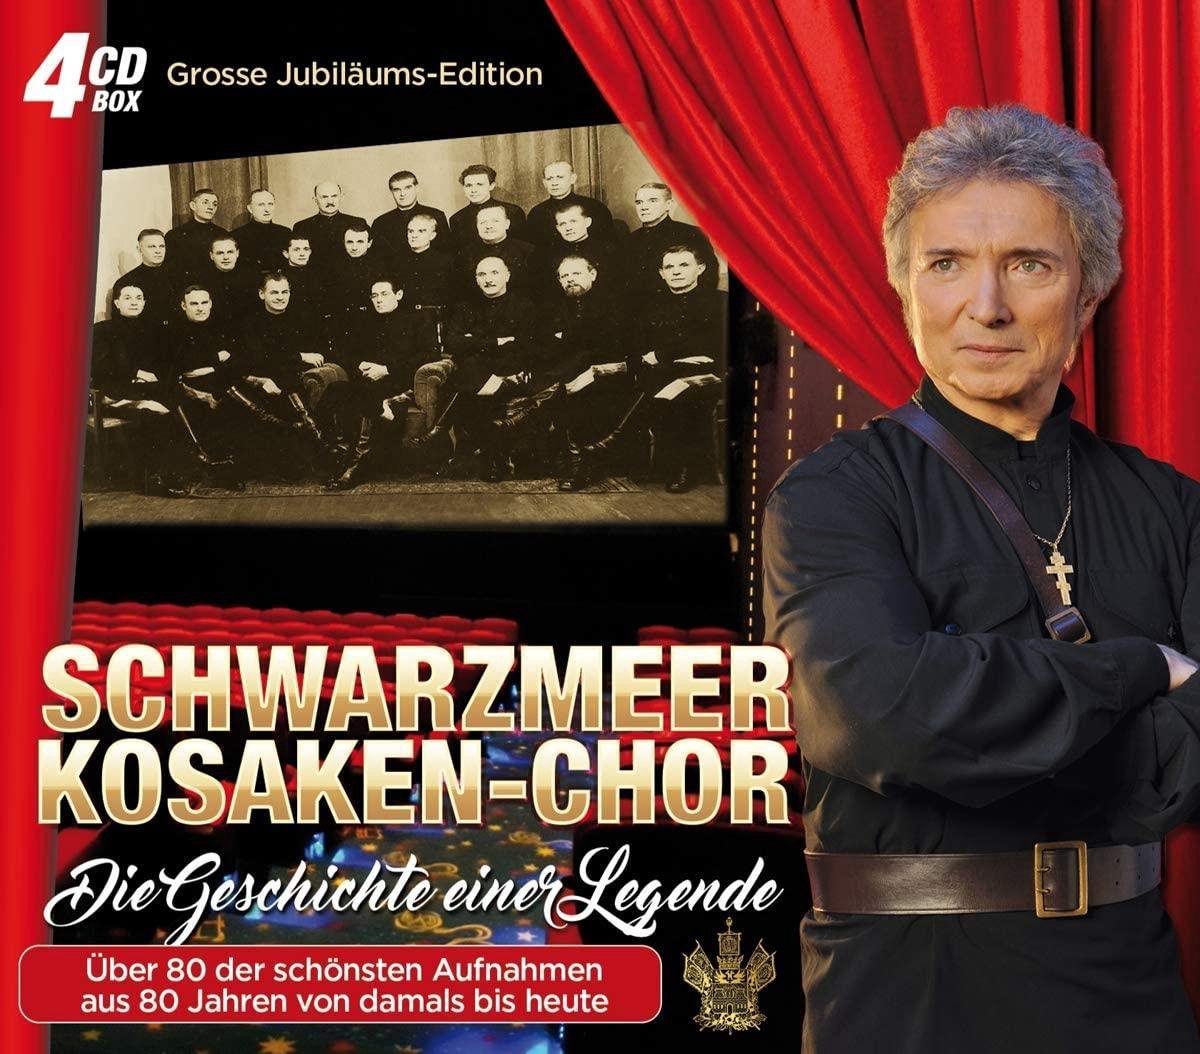 Peter & Der Schwarzmeer Kosaken-Chor Orloff - Die Geschichte Einer Legende (CD) - Peter & der Schwarzmeer Kosaken-Chor Orloff